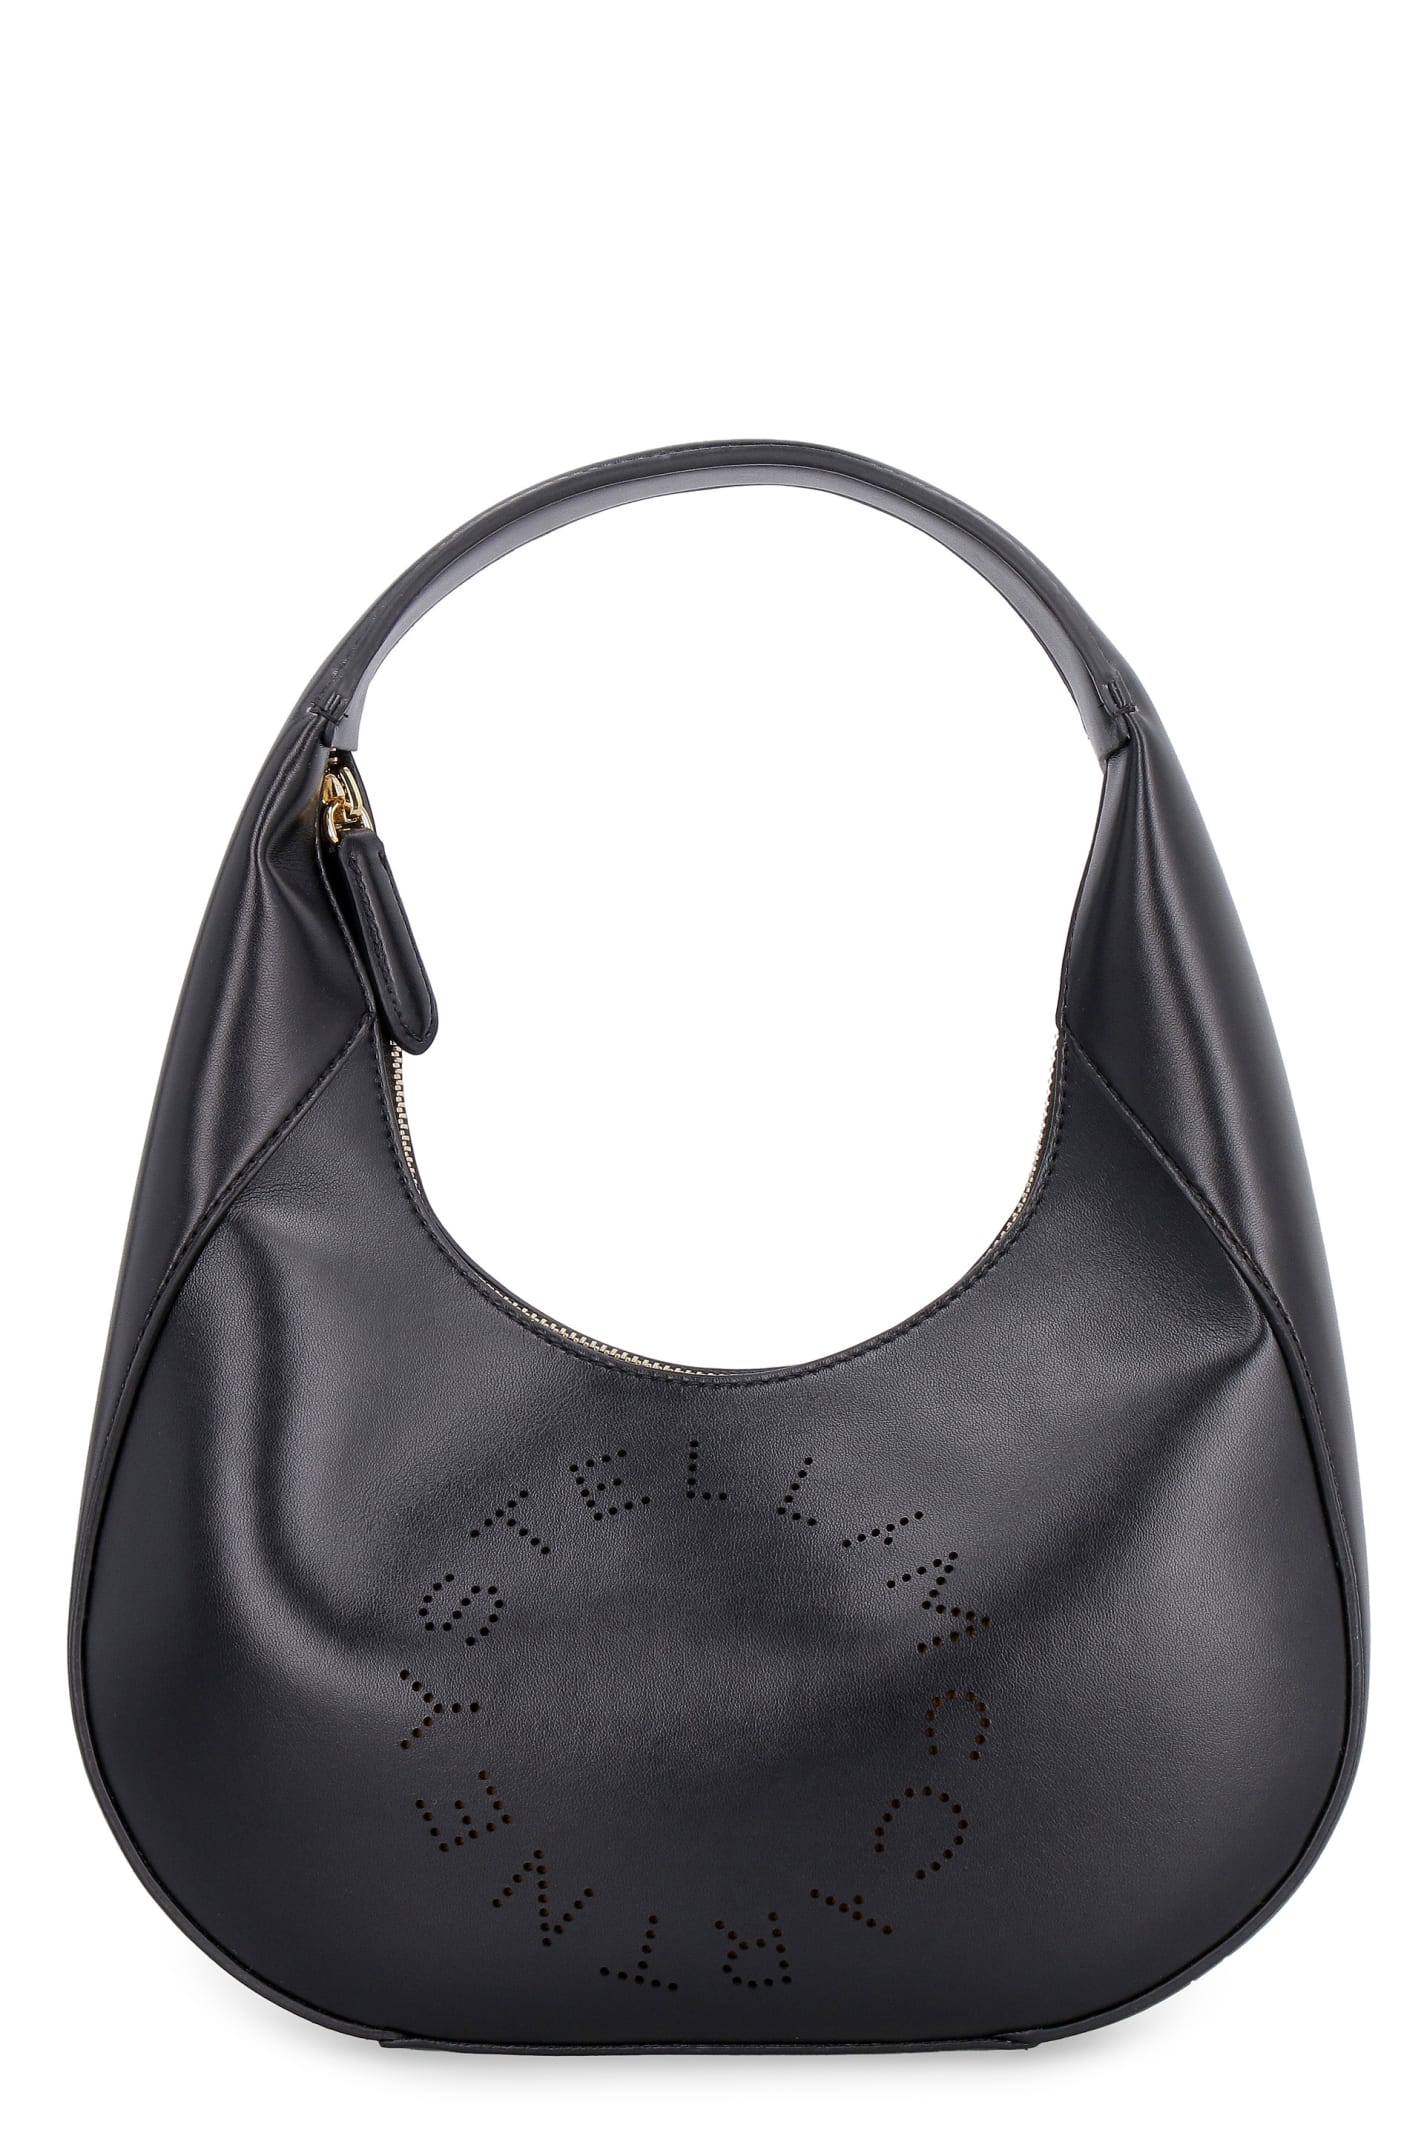 Stella McCartney Logo Detail Shoulder Bag